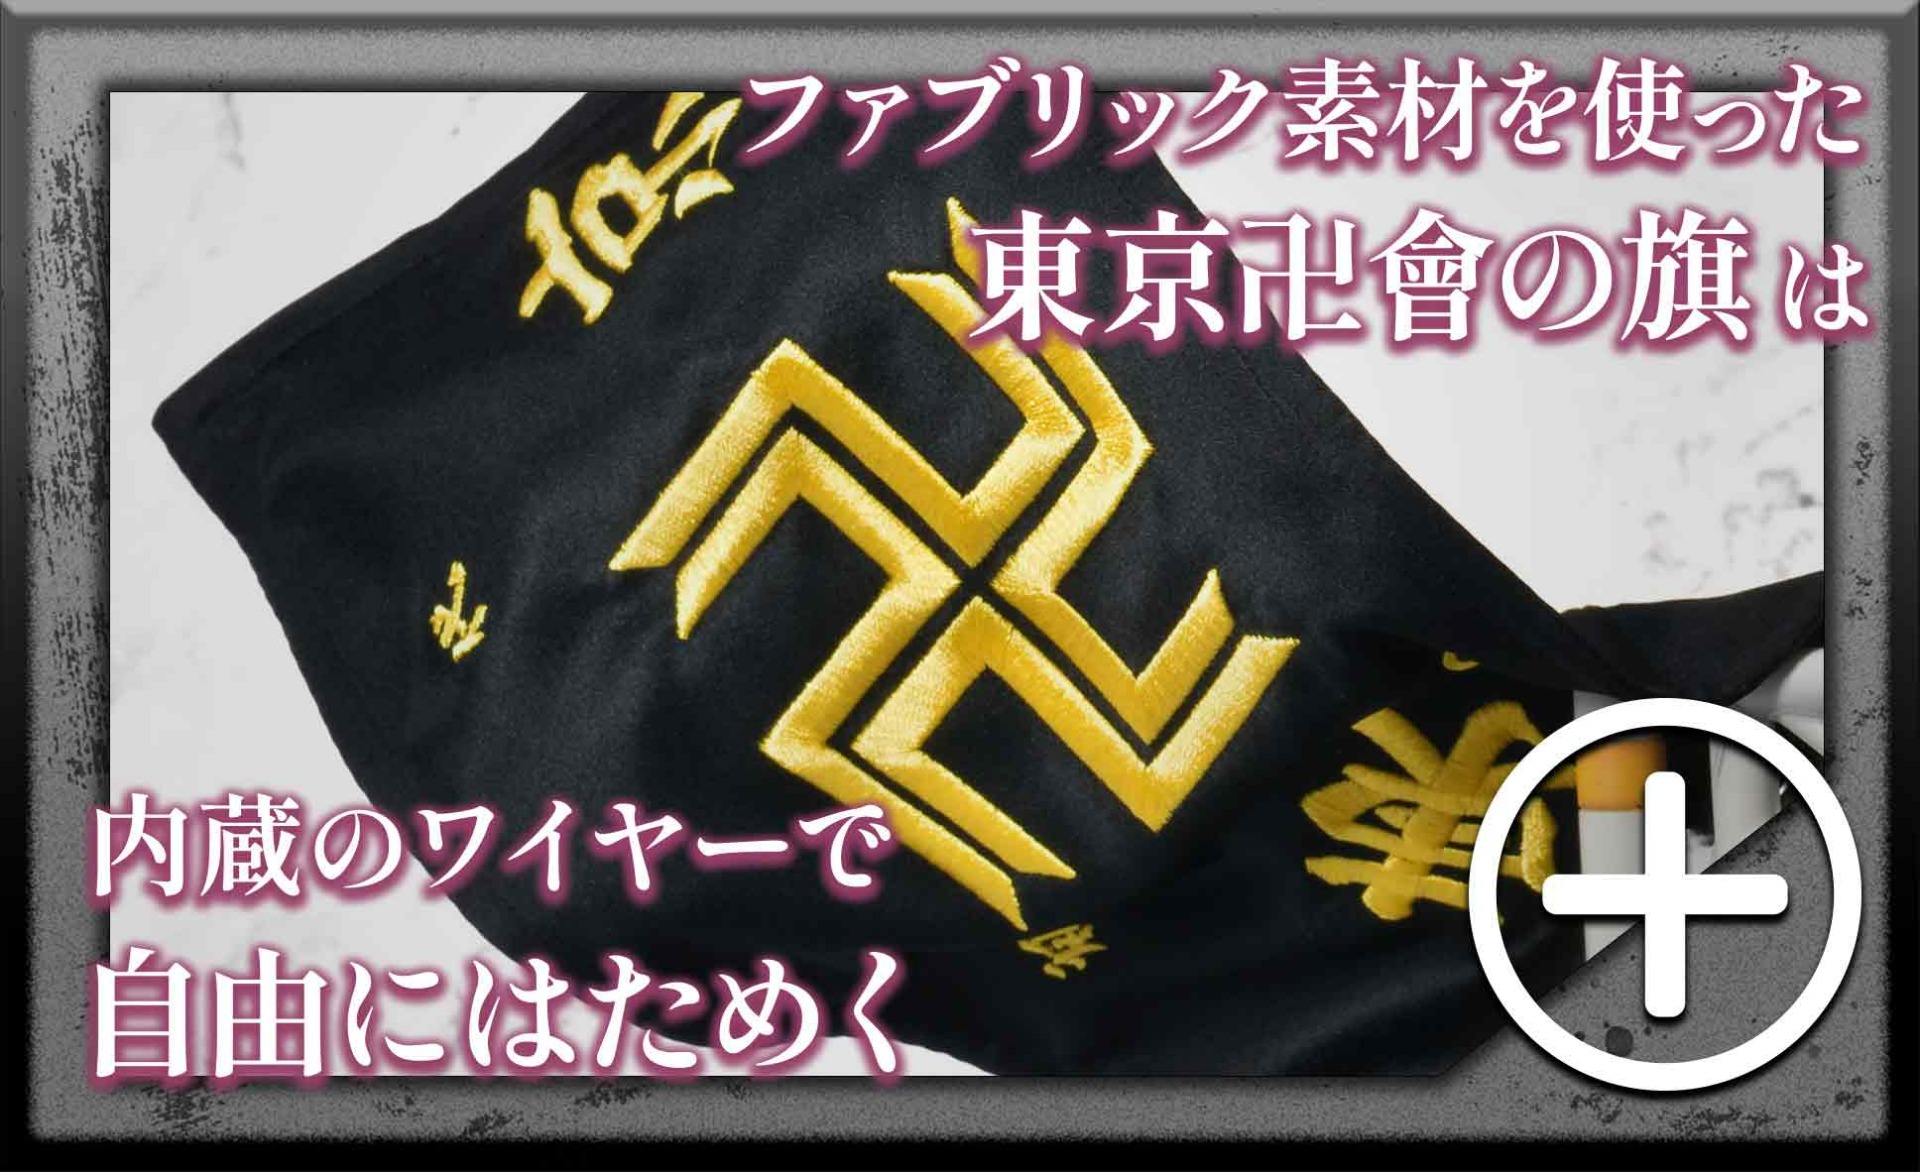 ファブリック素材を使った東京卍會の旗は内蔵のワイヤーで自由にはためく　pc